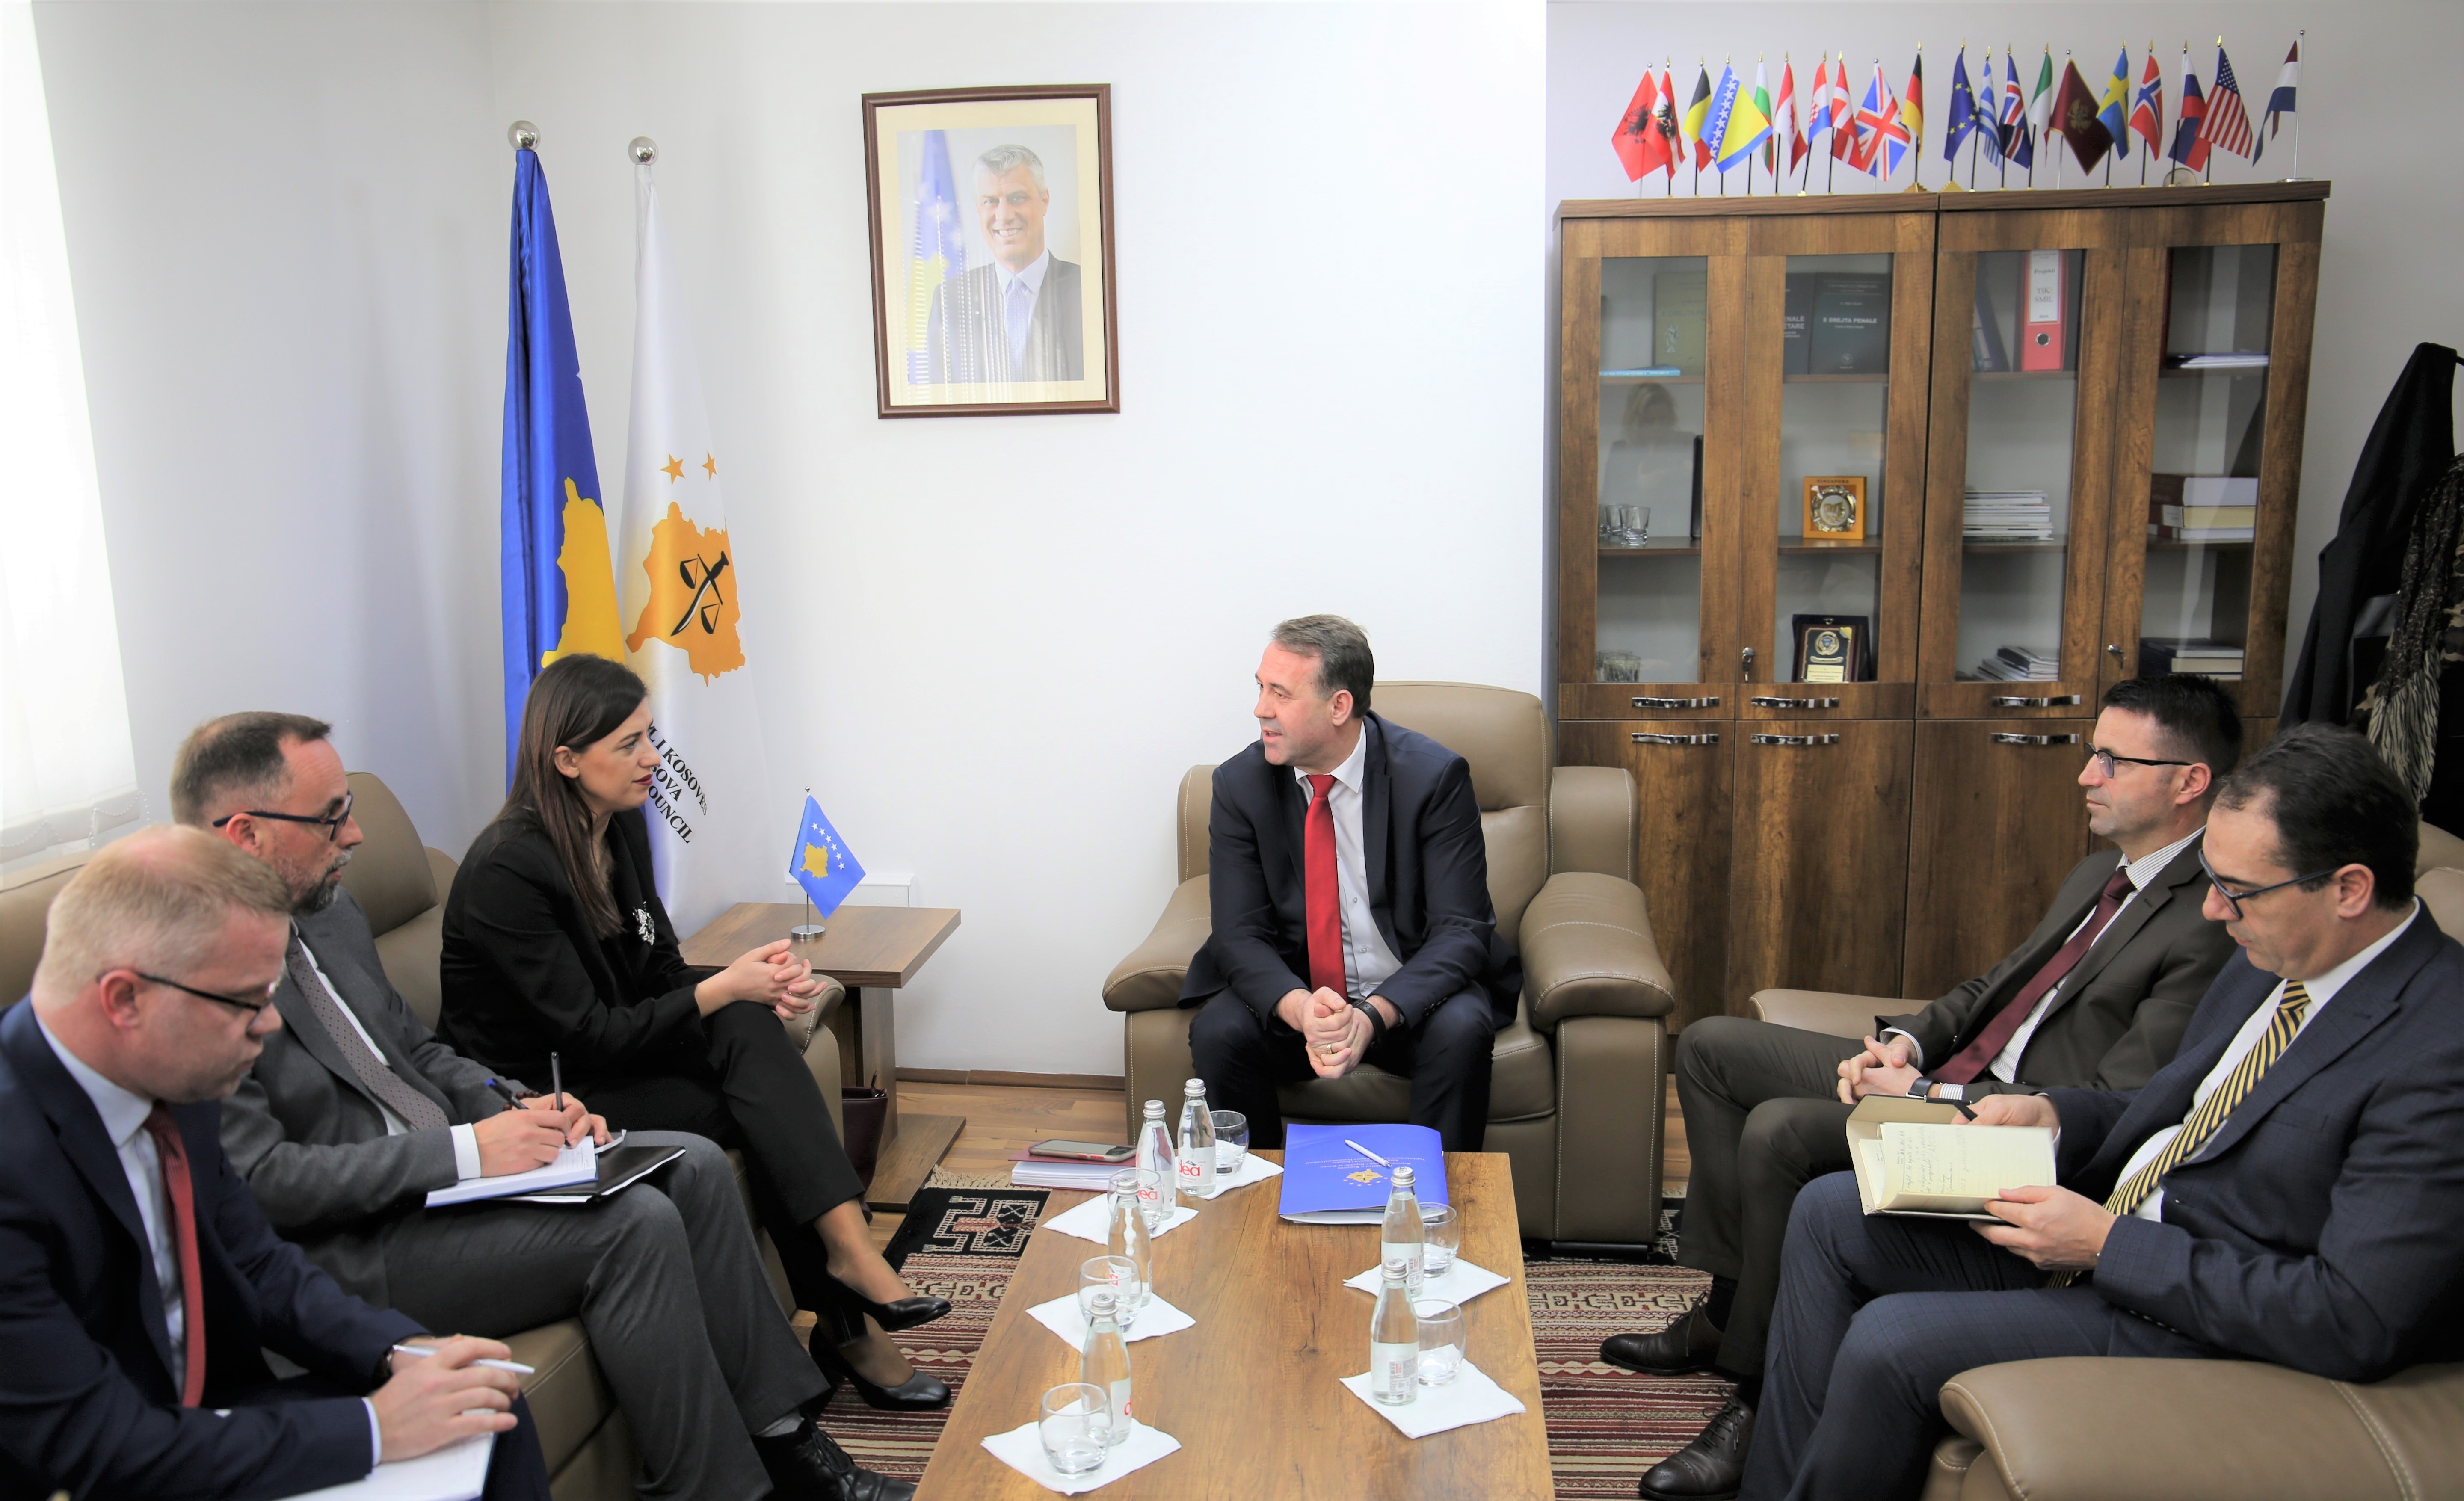 Chairman Hyseni met with Minister Haxhiu